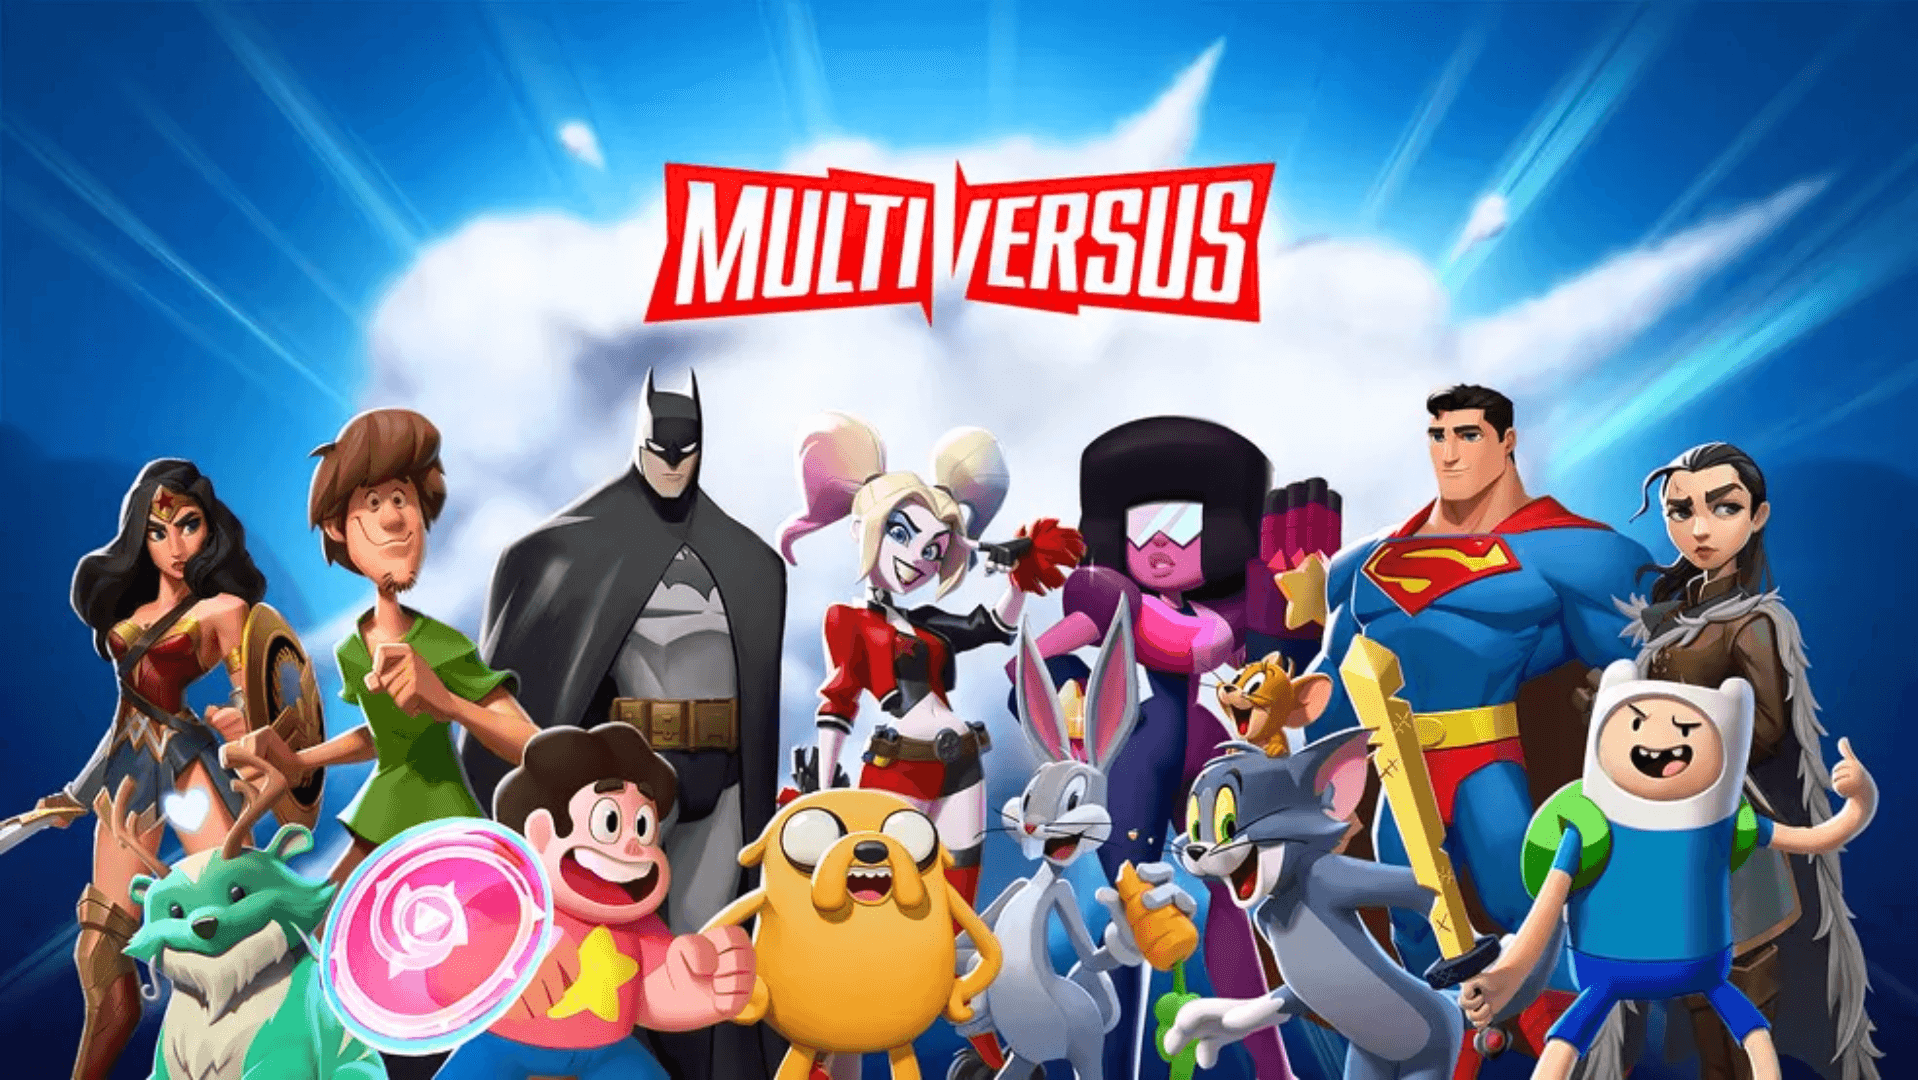 Gratuito e com elenco estelar de personagens, MultiVersus será lançado em maio